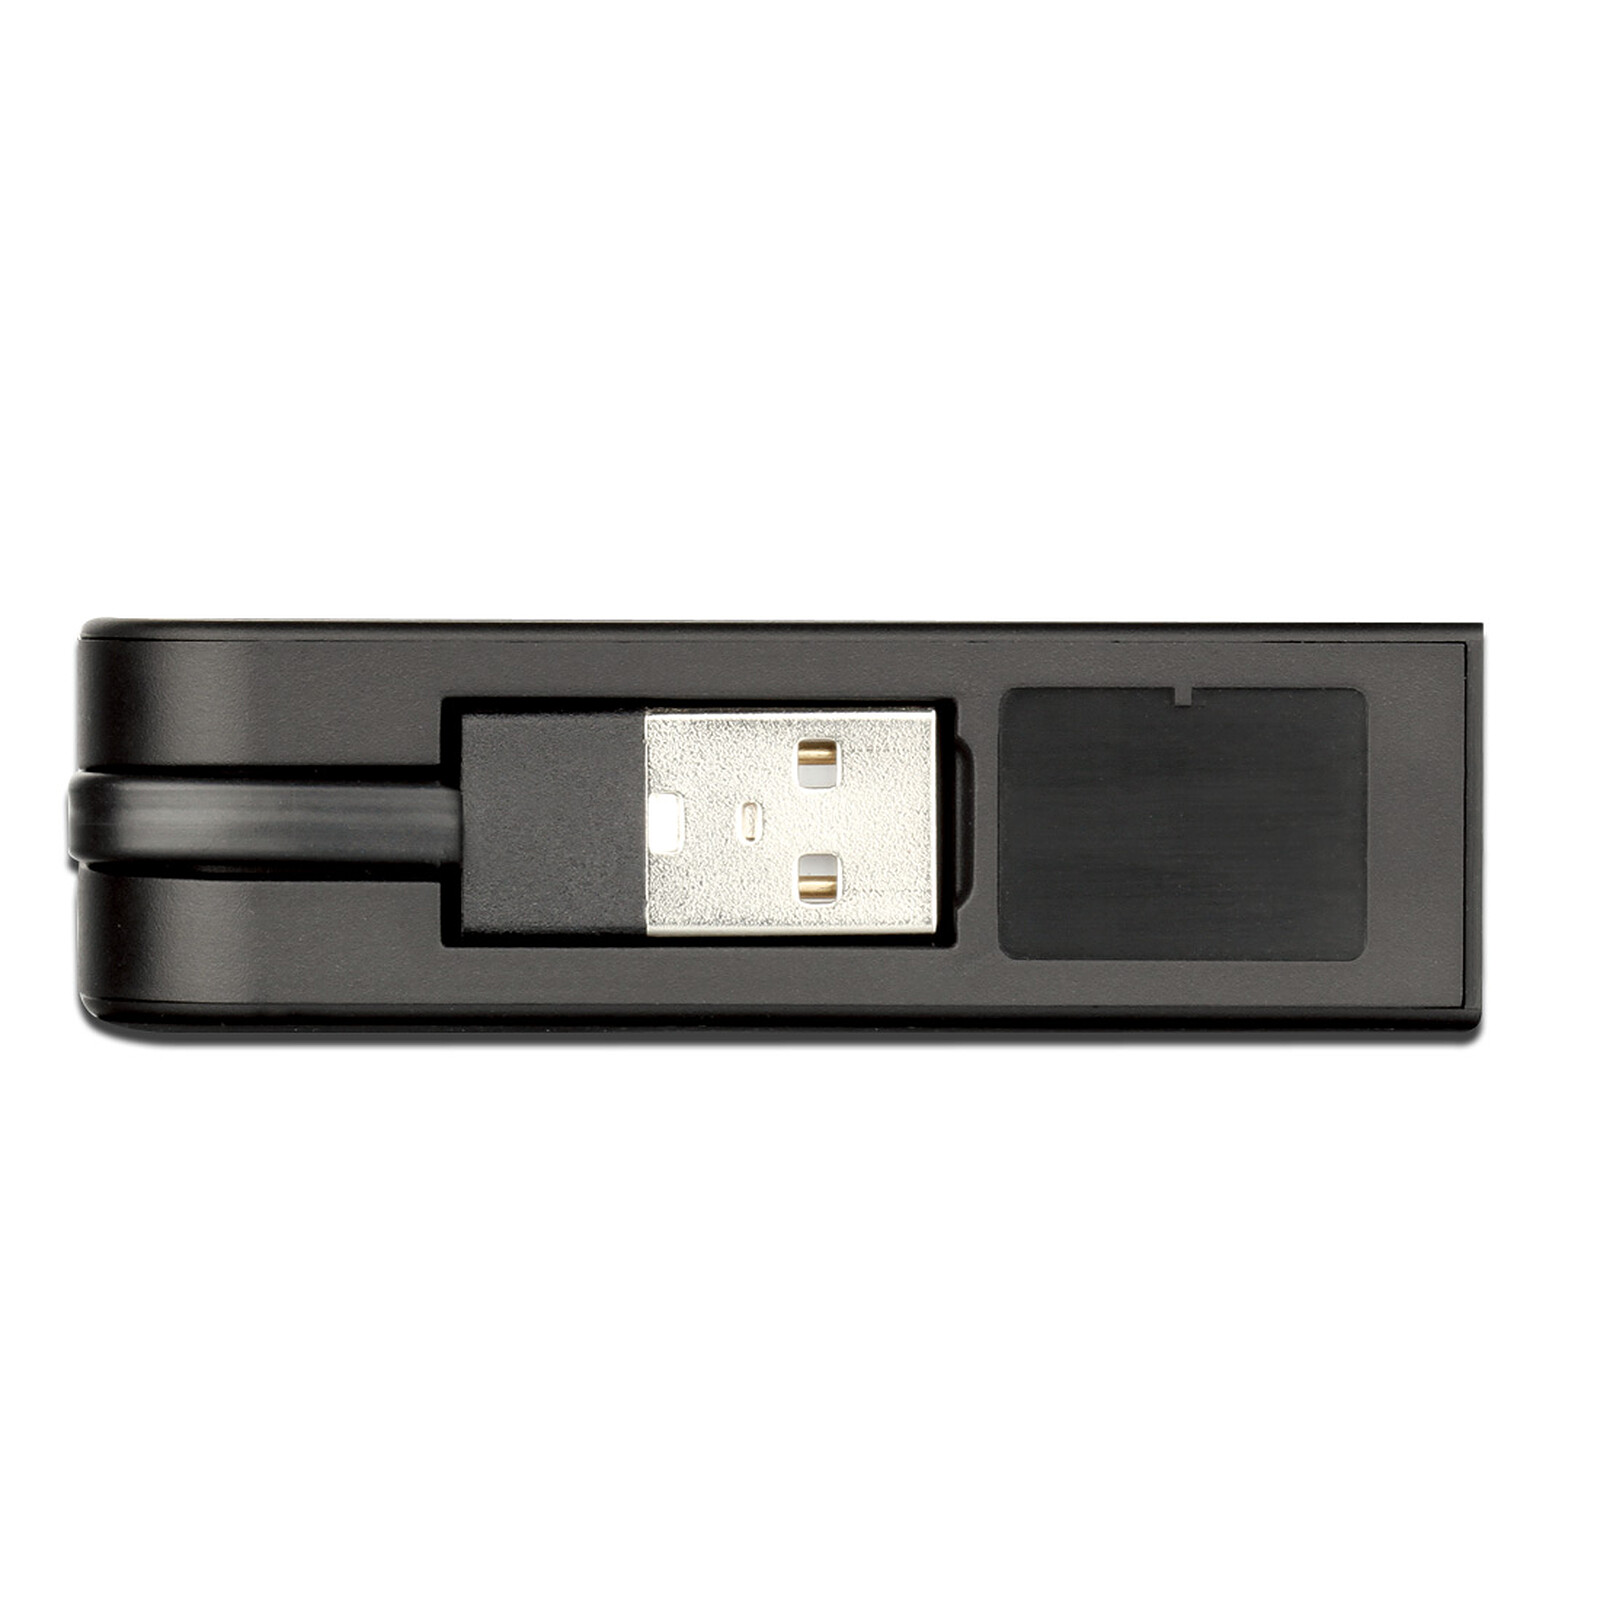 DUB-E100, D-Link Adaptateur réseau USB, 100Mbps, Fiche USB-A - Prise RJ45